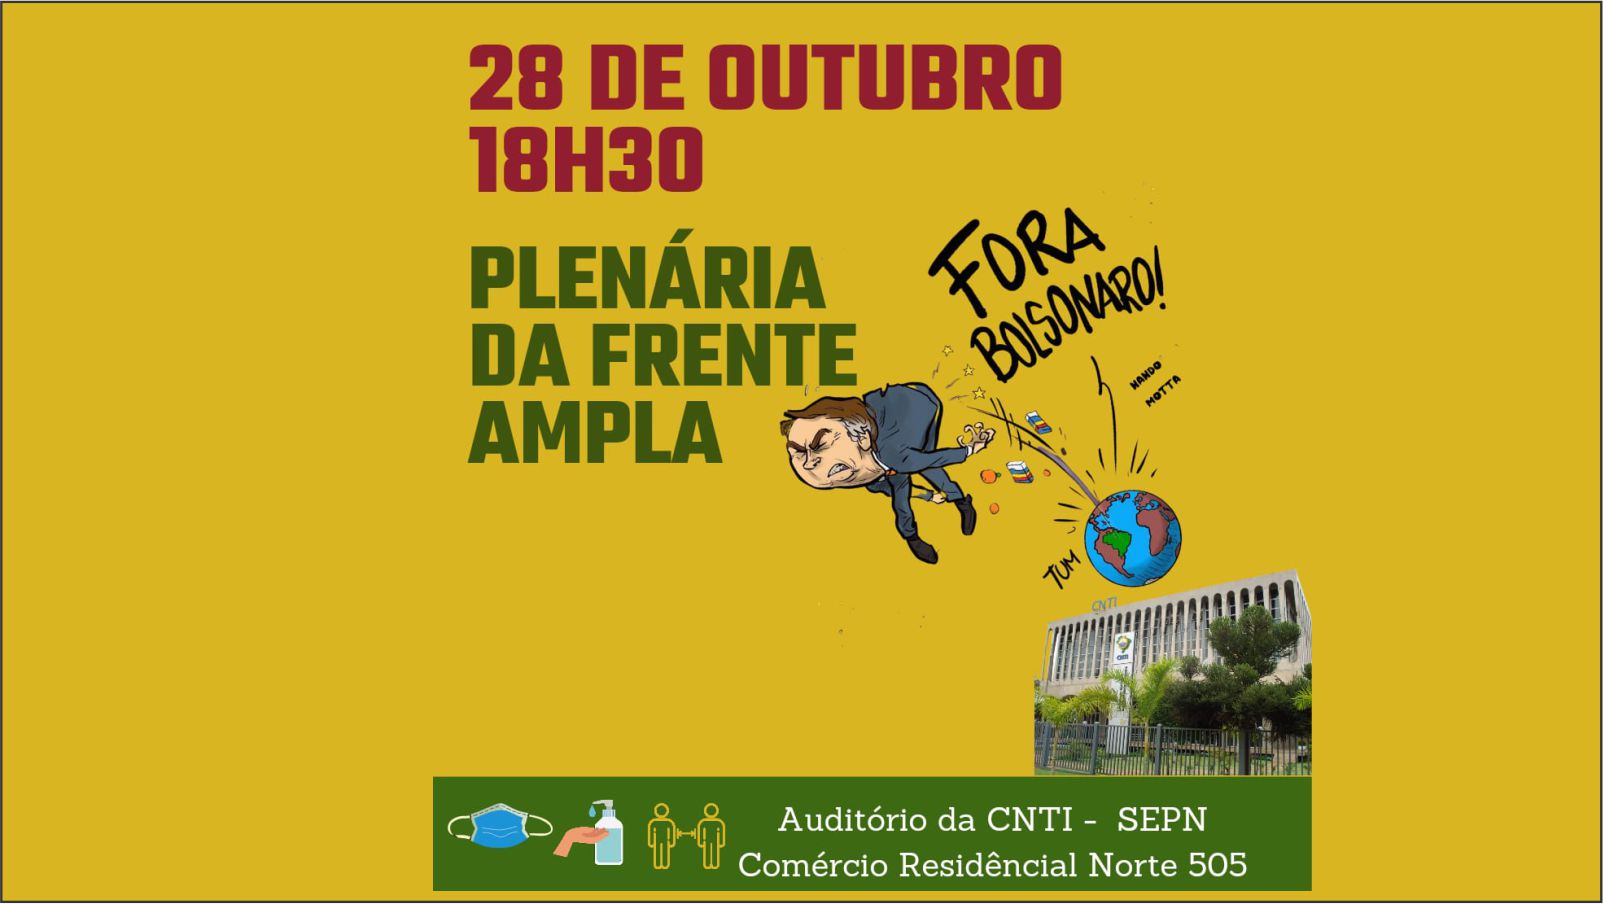 Plenária da Frente Ampla - Fora Bolsonaro - 28 de outubro